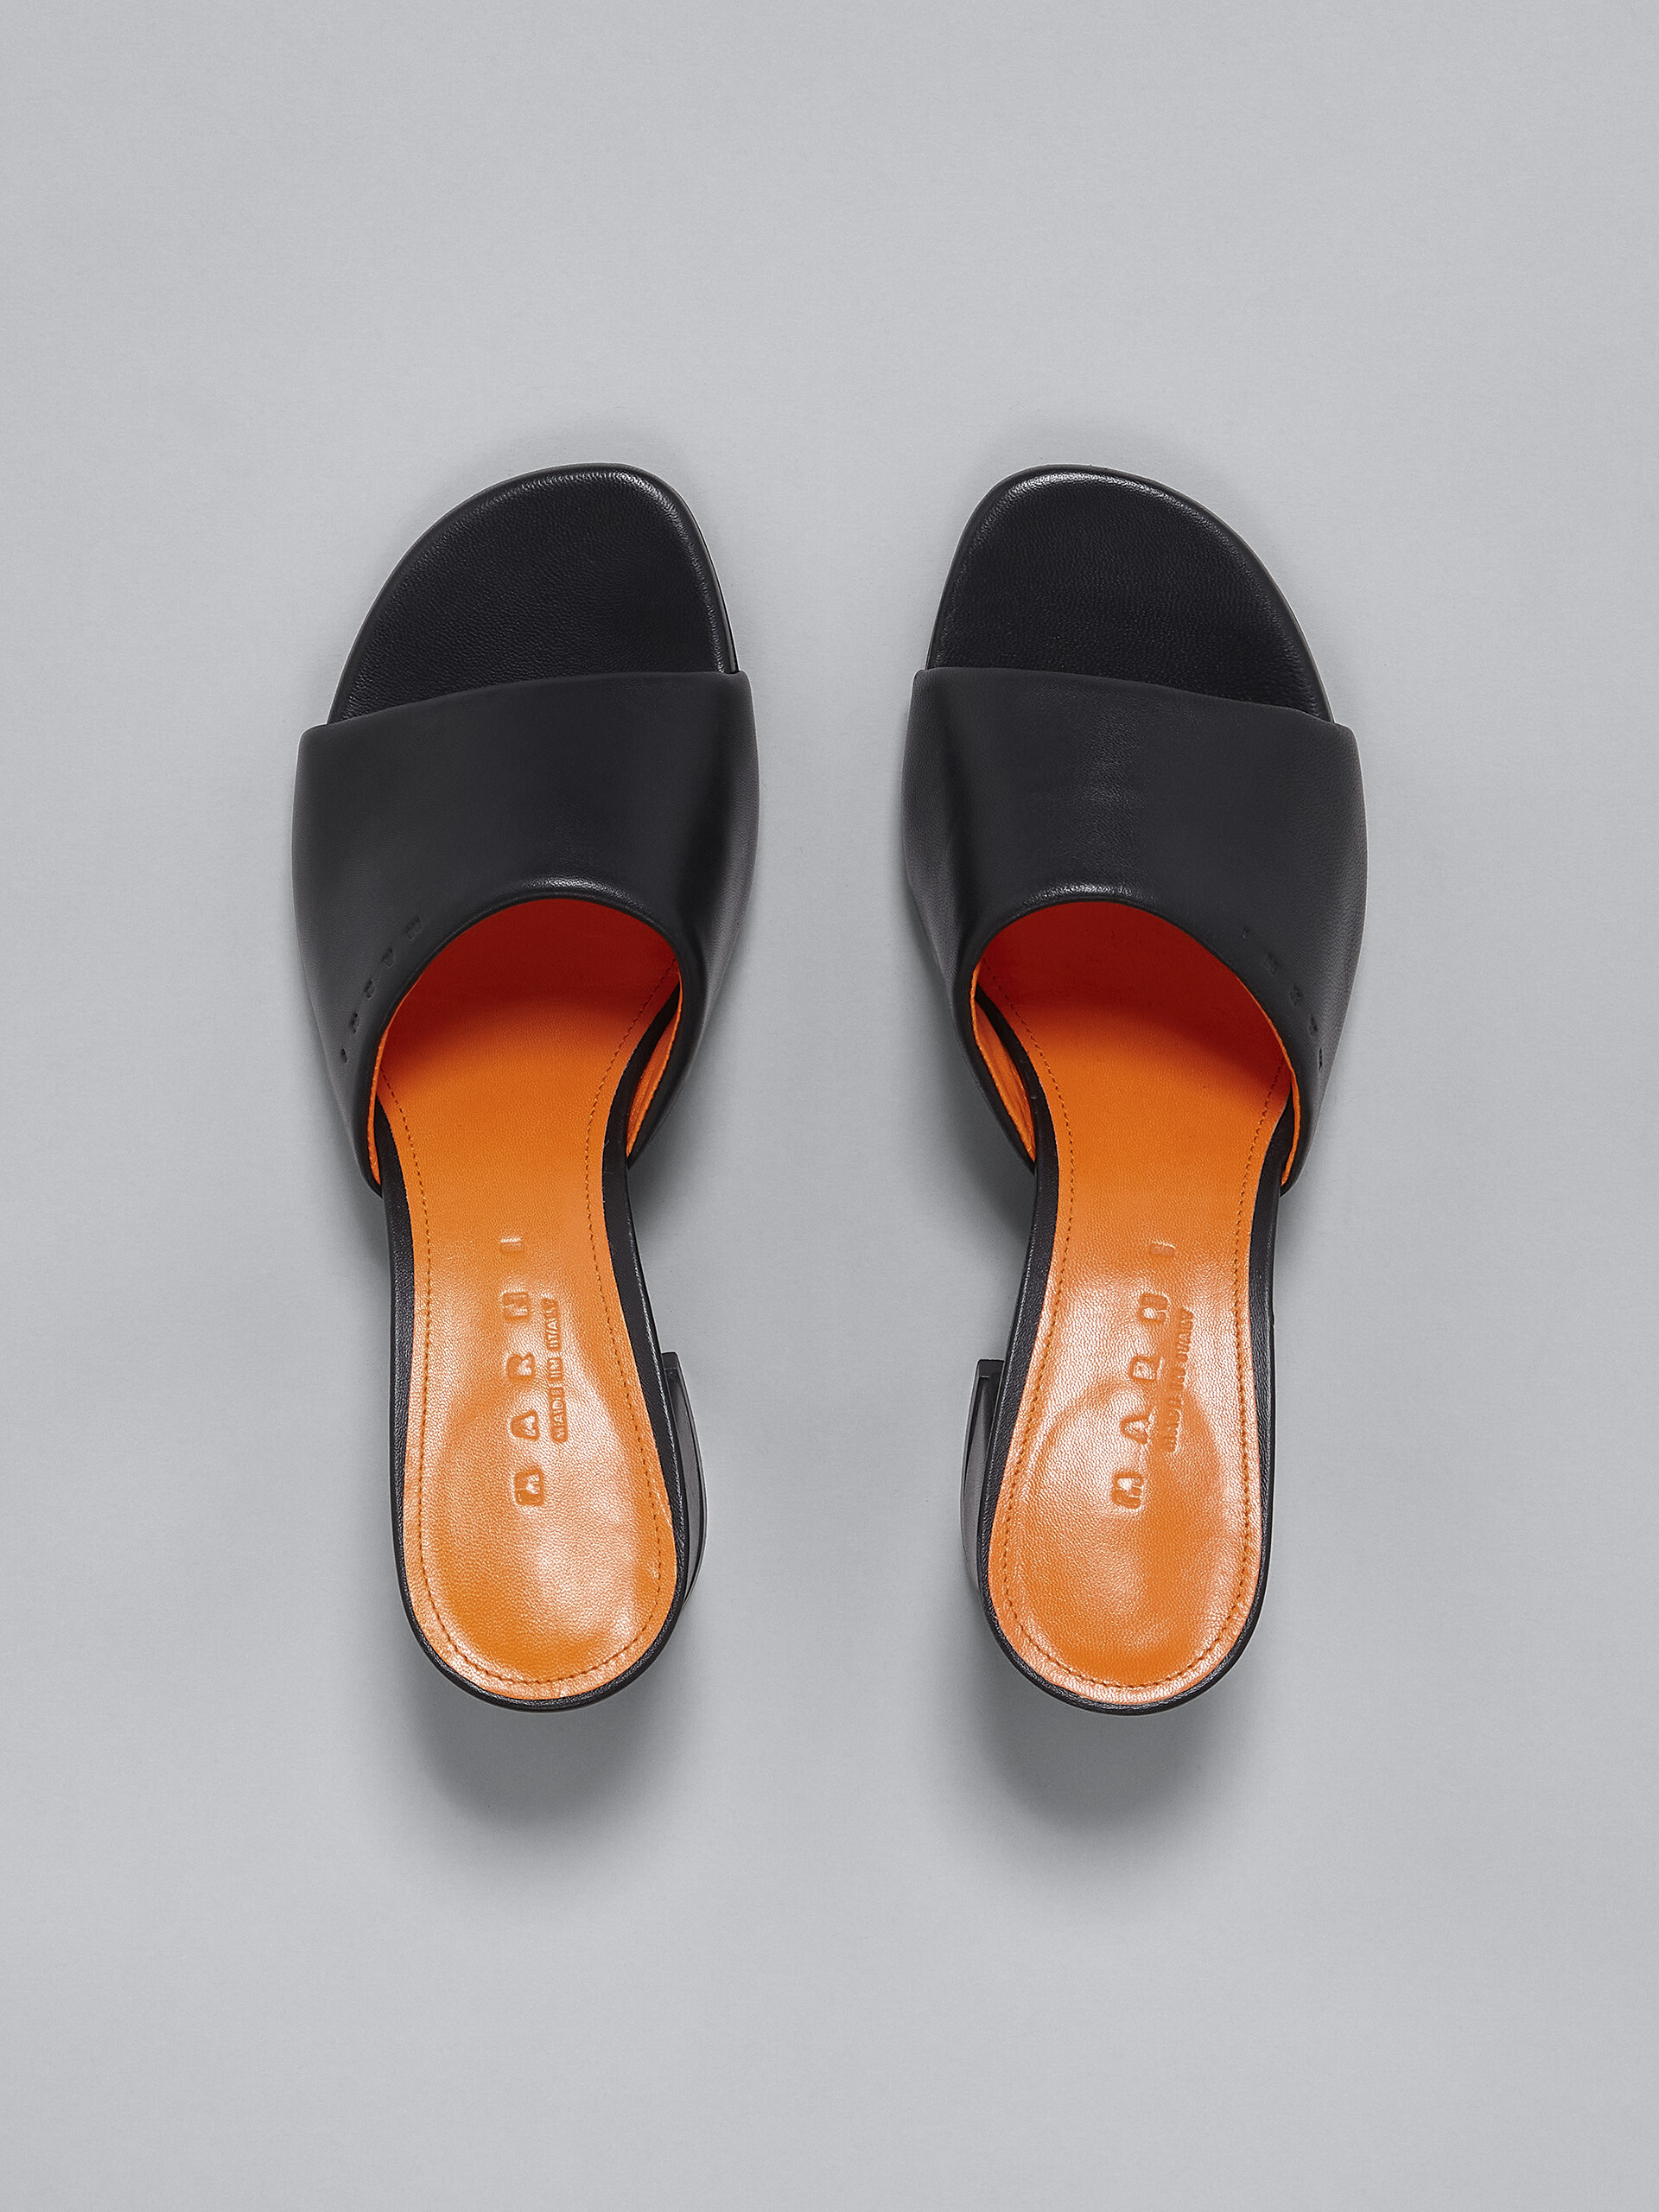 Black leather sandal - Sandals - Image 4